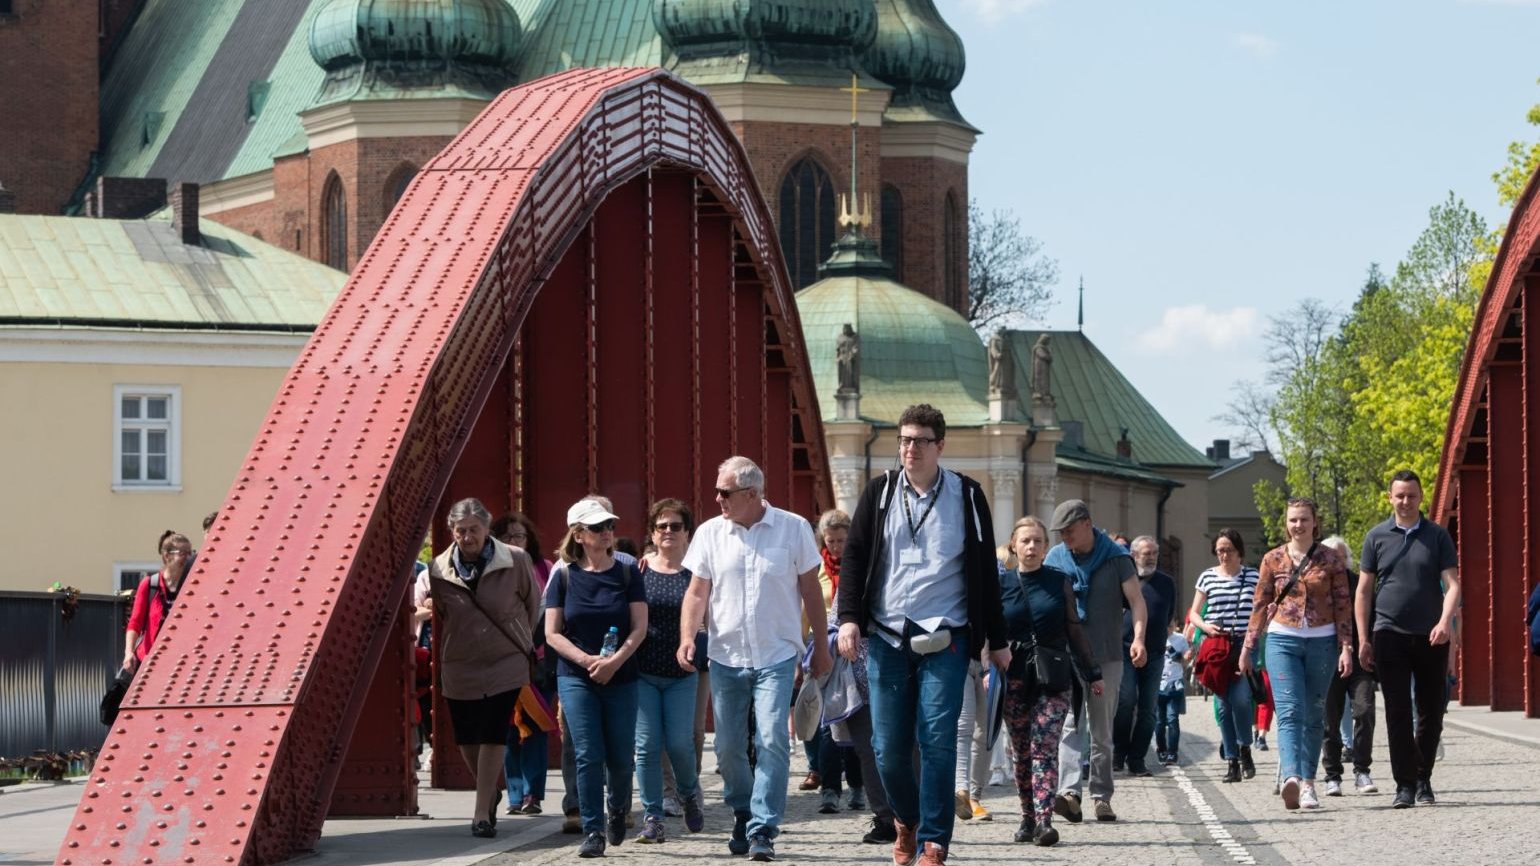 Przewodnik prowadzi dużą grupę zwiedzających przez most, w tle Katedra Poznańska